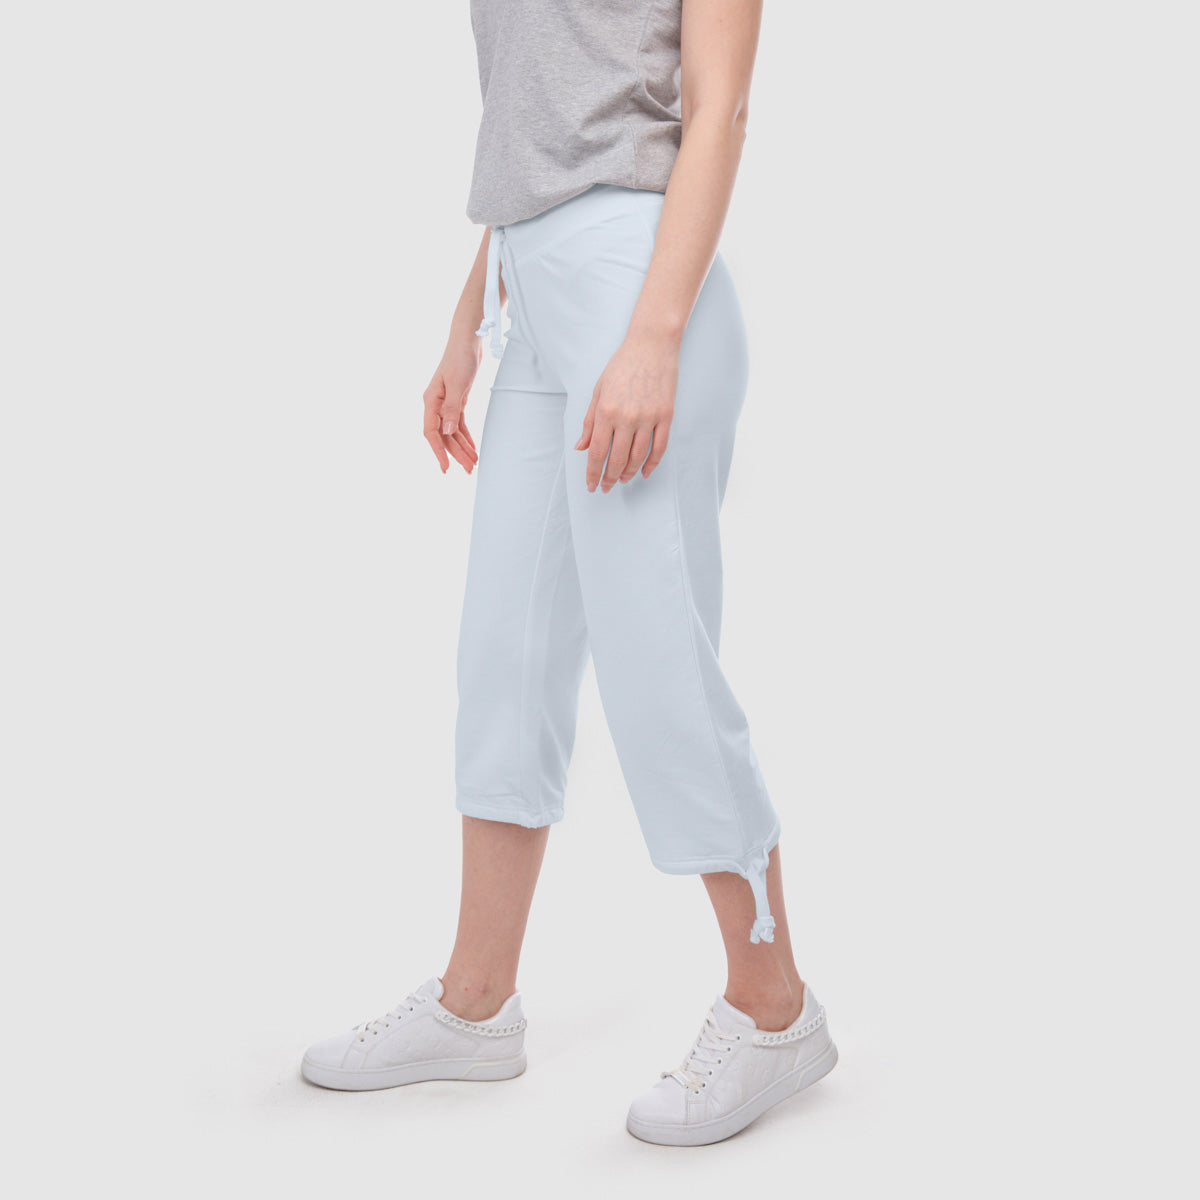 donna-conny-cotone organico-34-pantaloni-marino-fronte